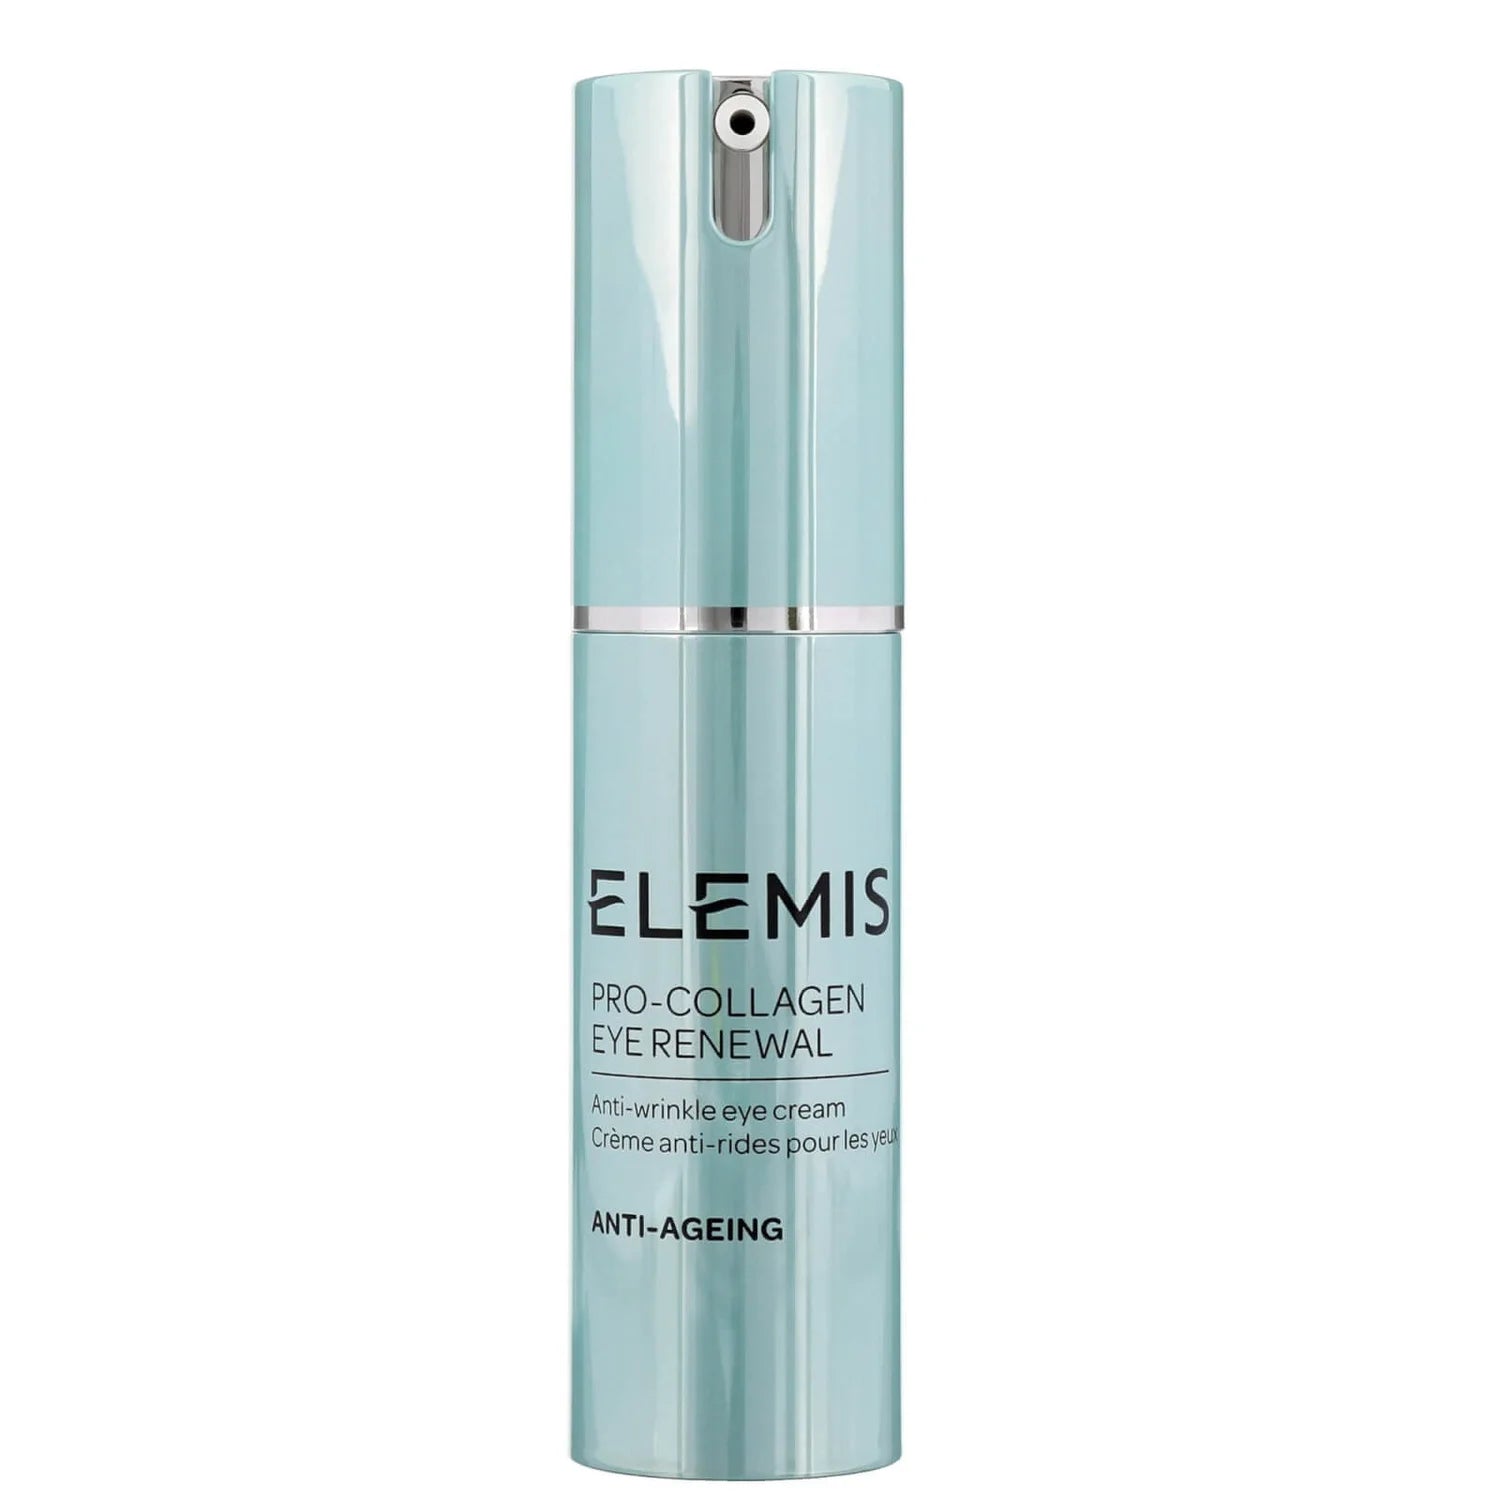 ELEMIS Pro-Collagen Eye Renewal product image. 